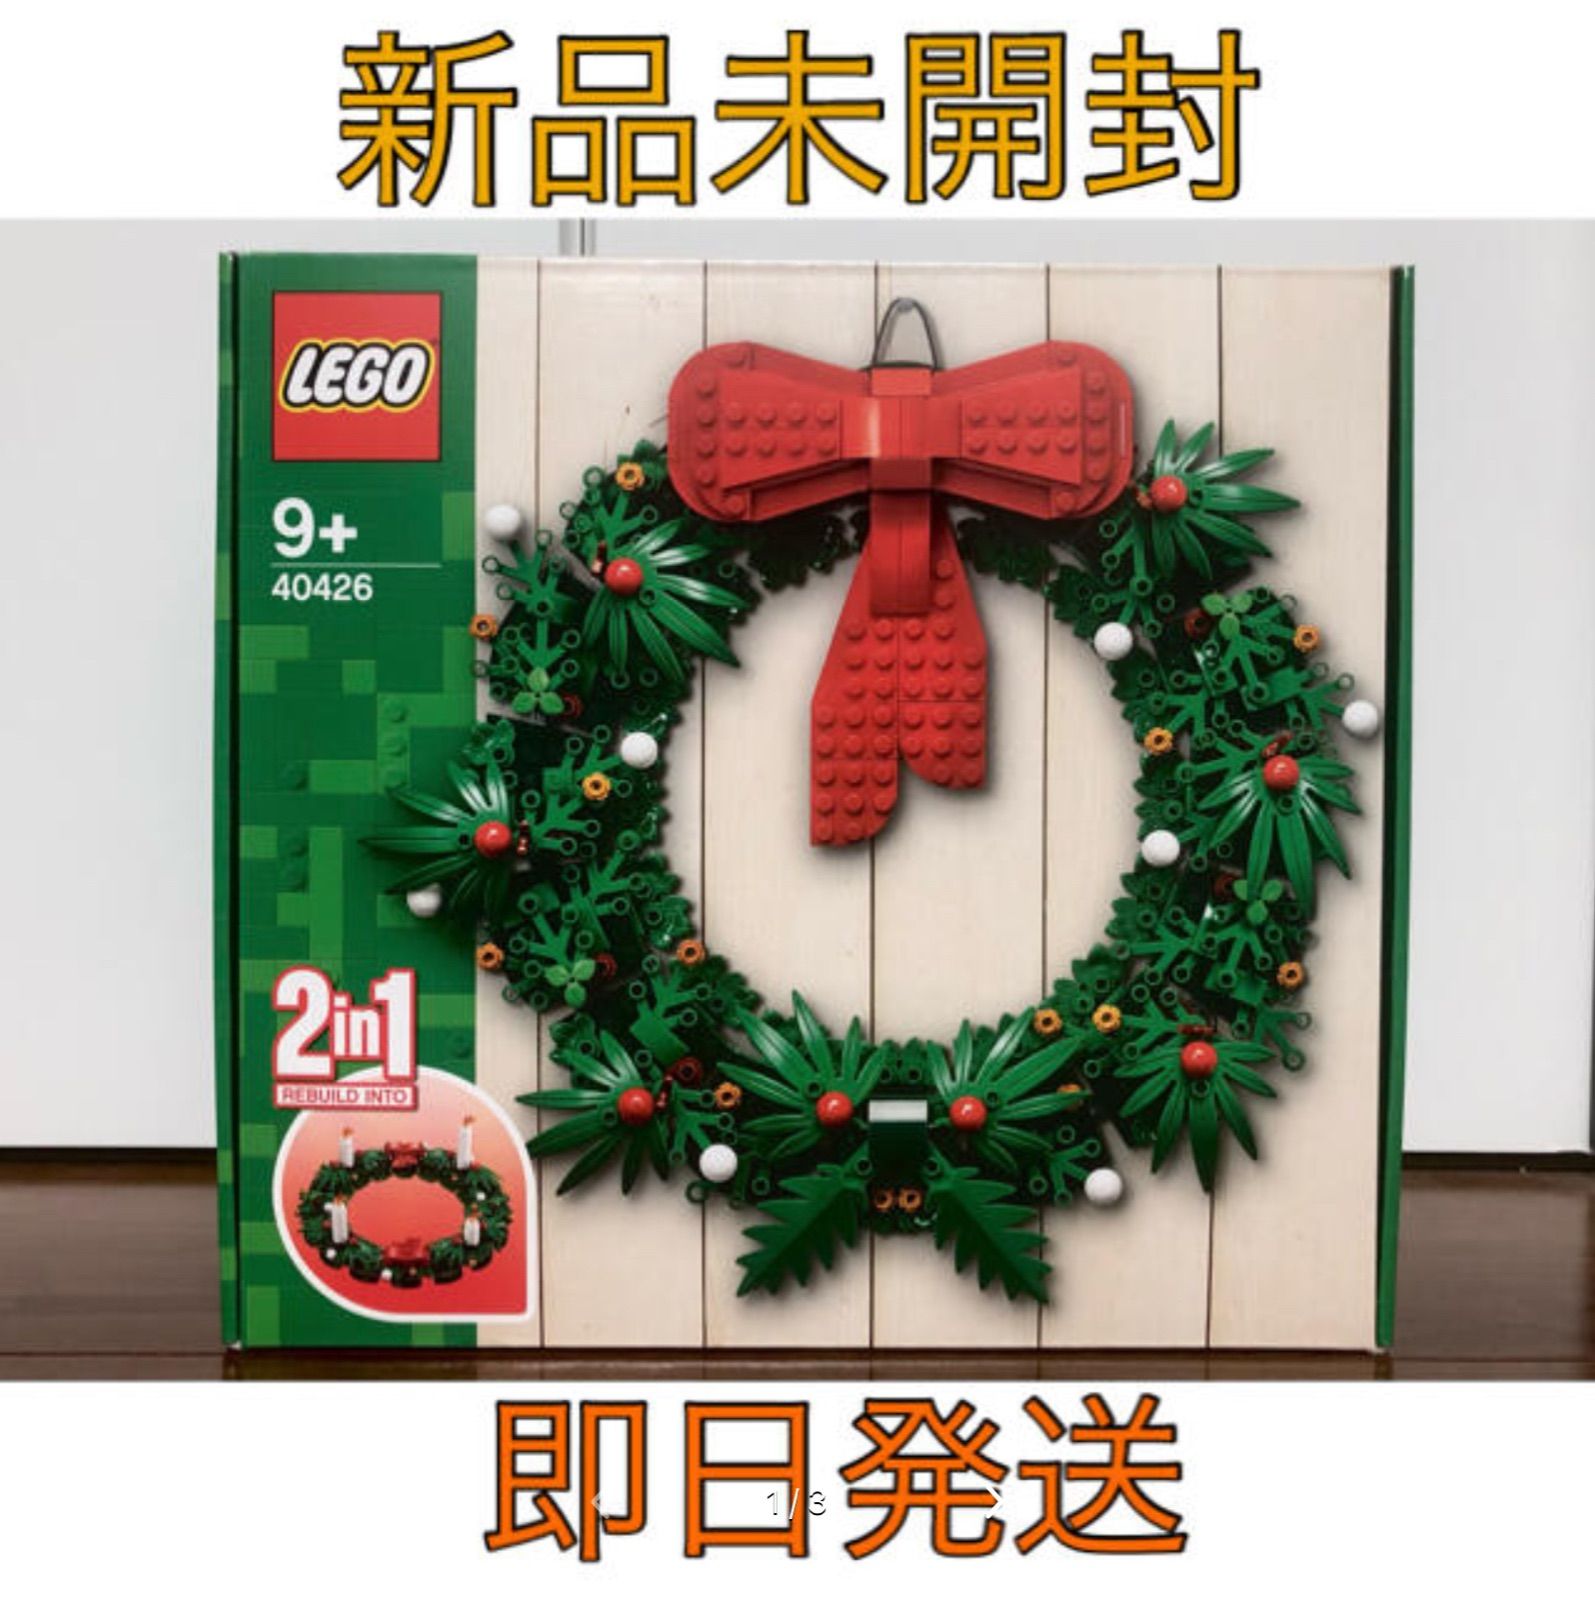 新品 未開封 レゴ クリスマス リース 2in1 40426